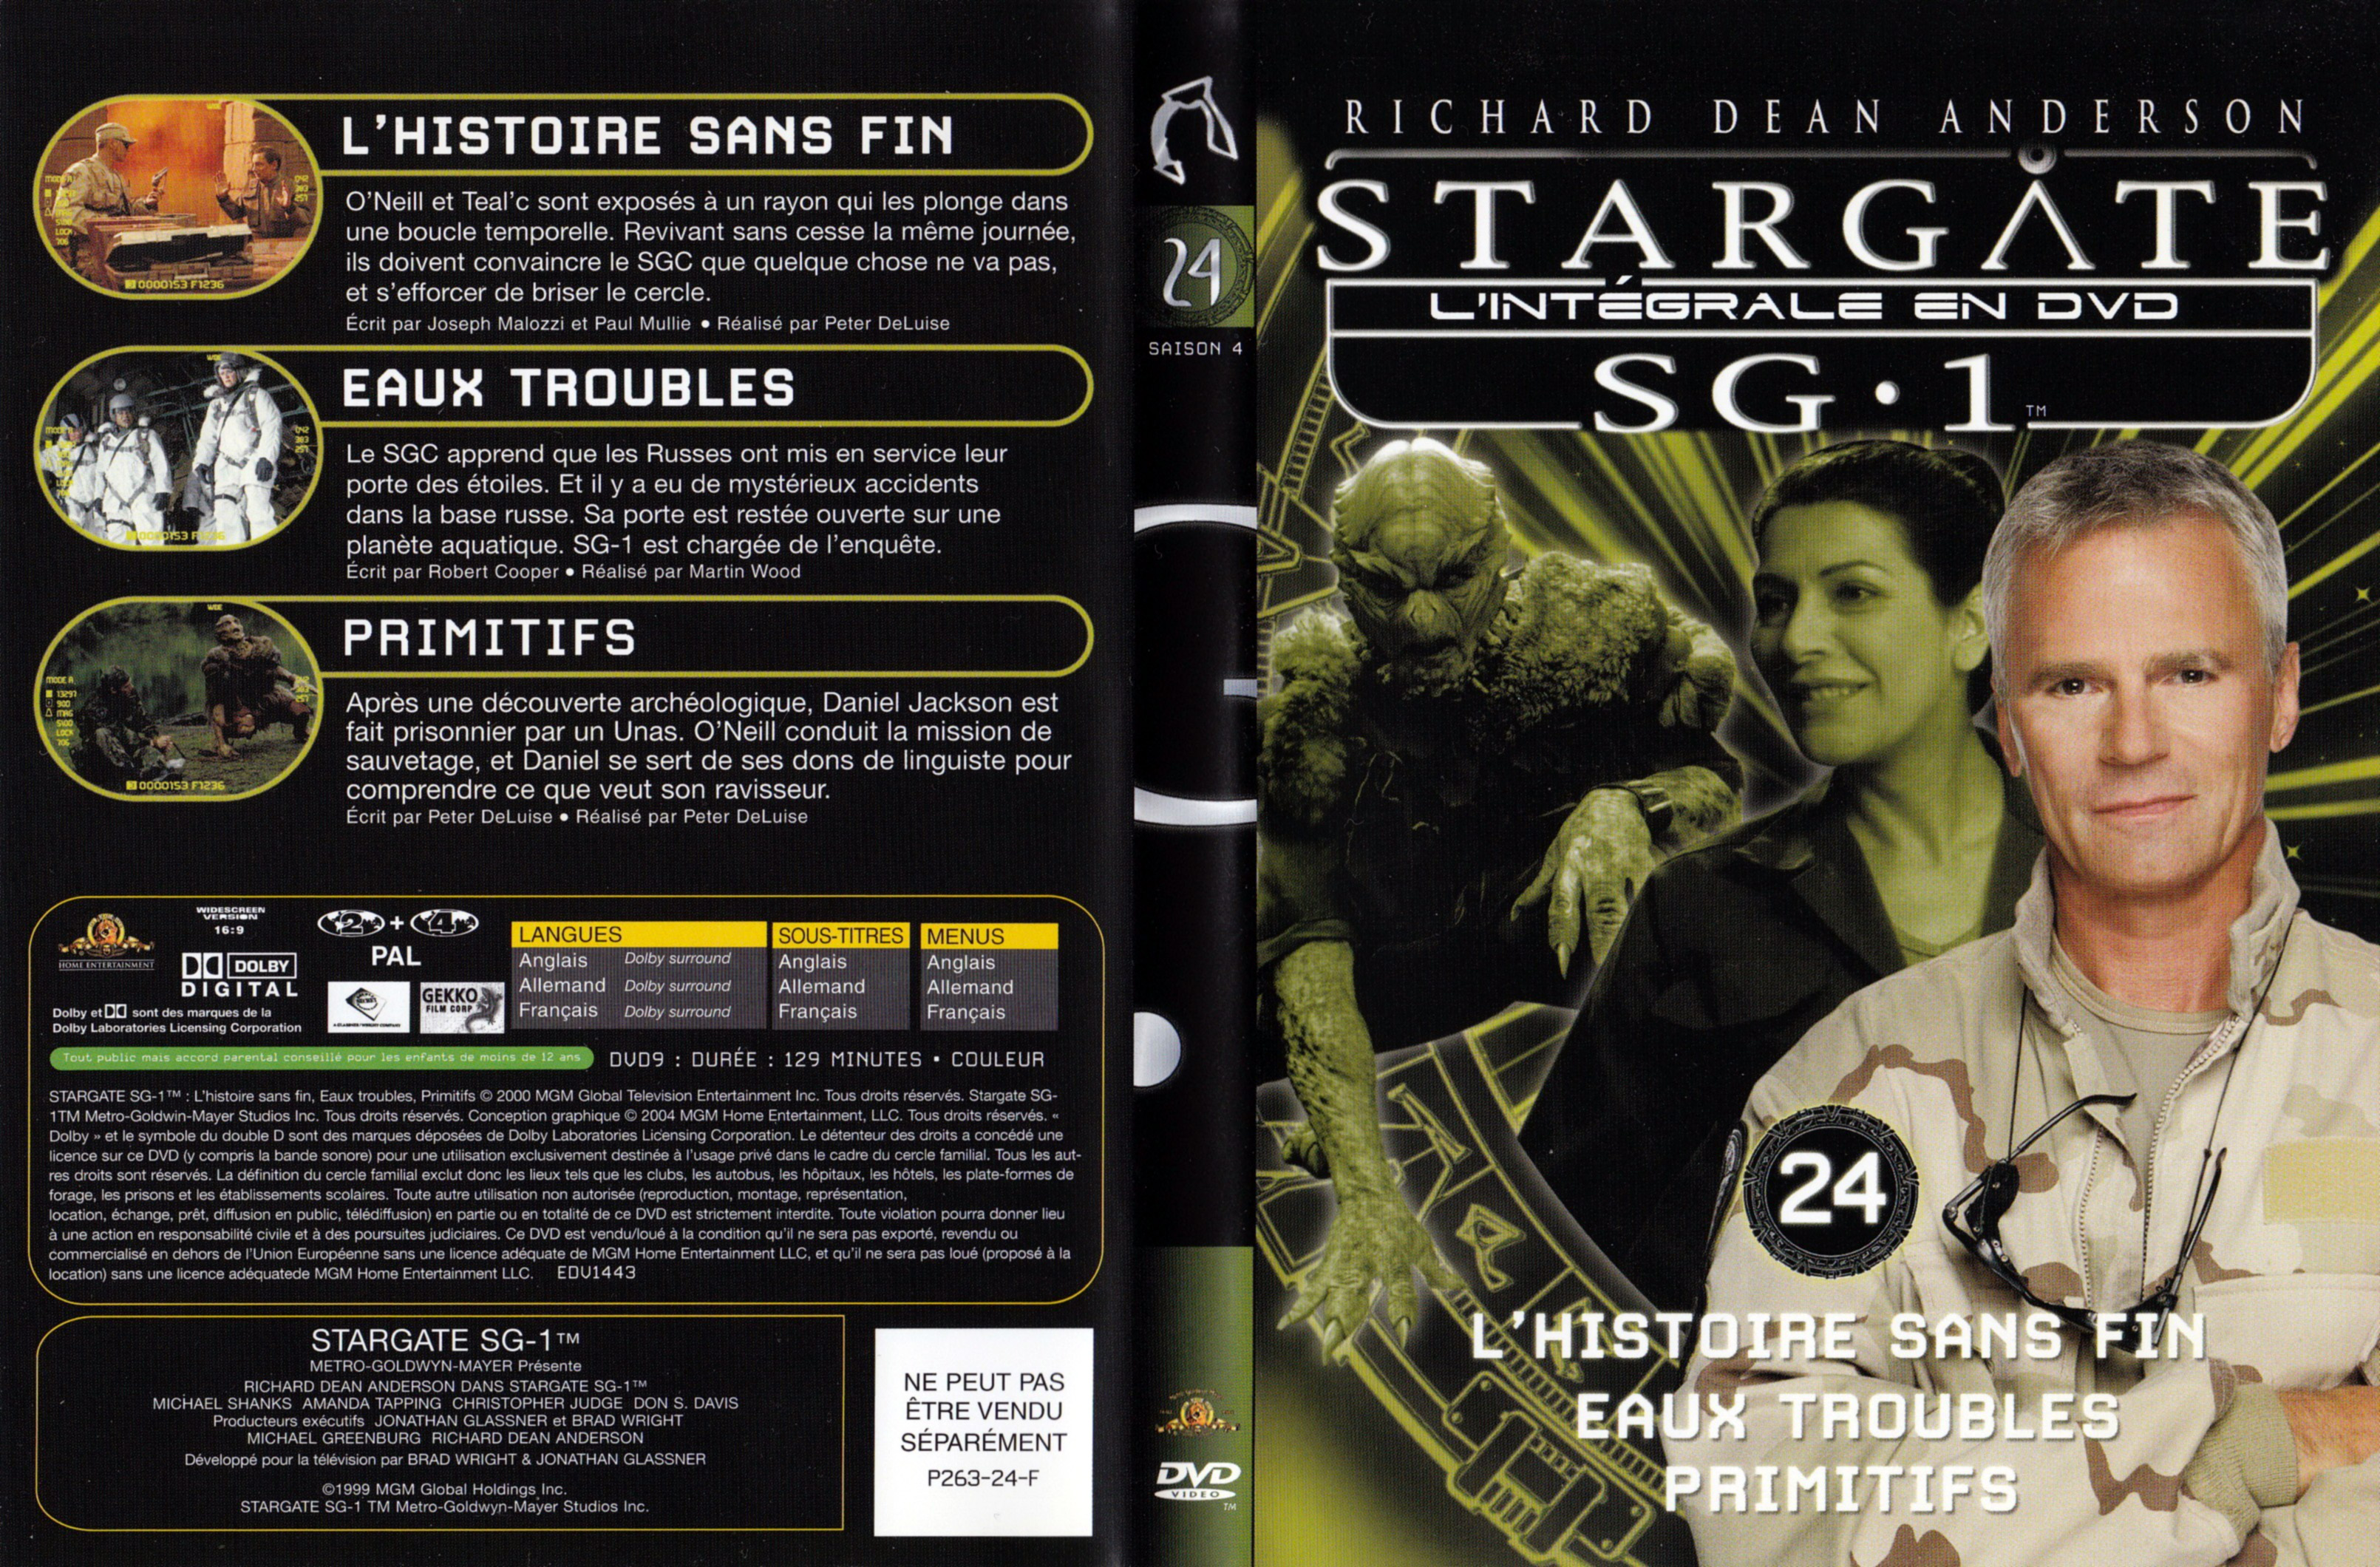 Jaquette DVD Stargate SG1 Intgrale Saison 4 vol 24